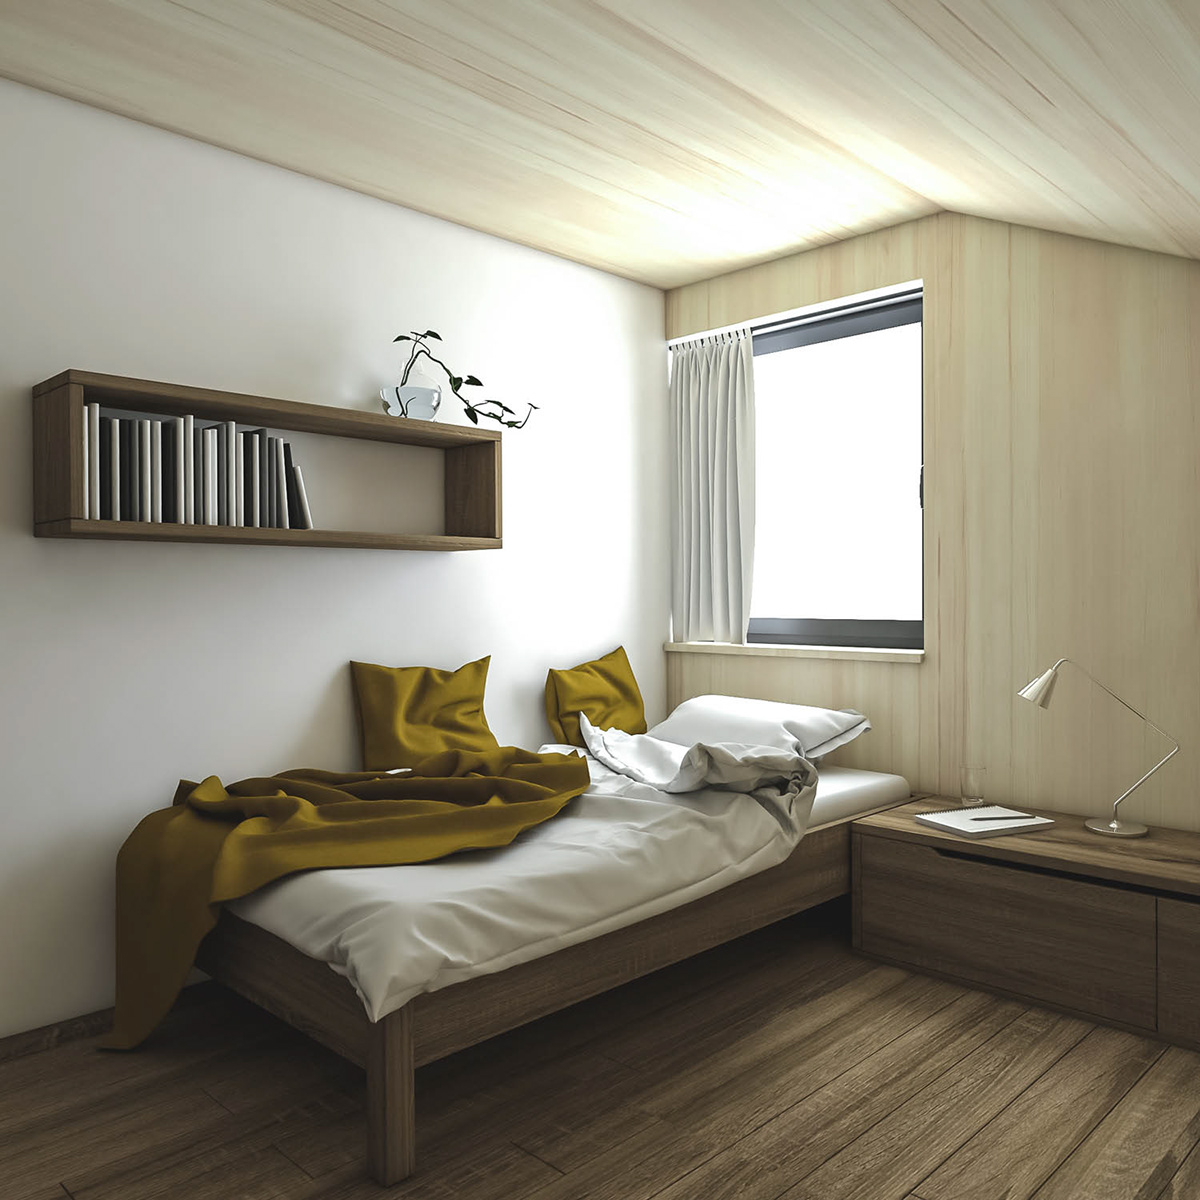 bedroom furniture Interior architecture Interior Architecture 3D Visualization rendering 3D interior design  furniture design 